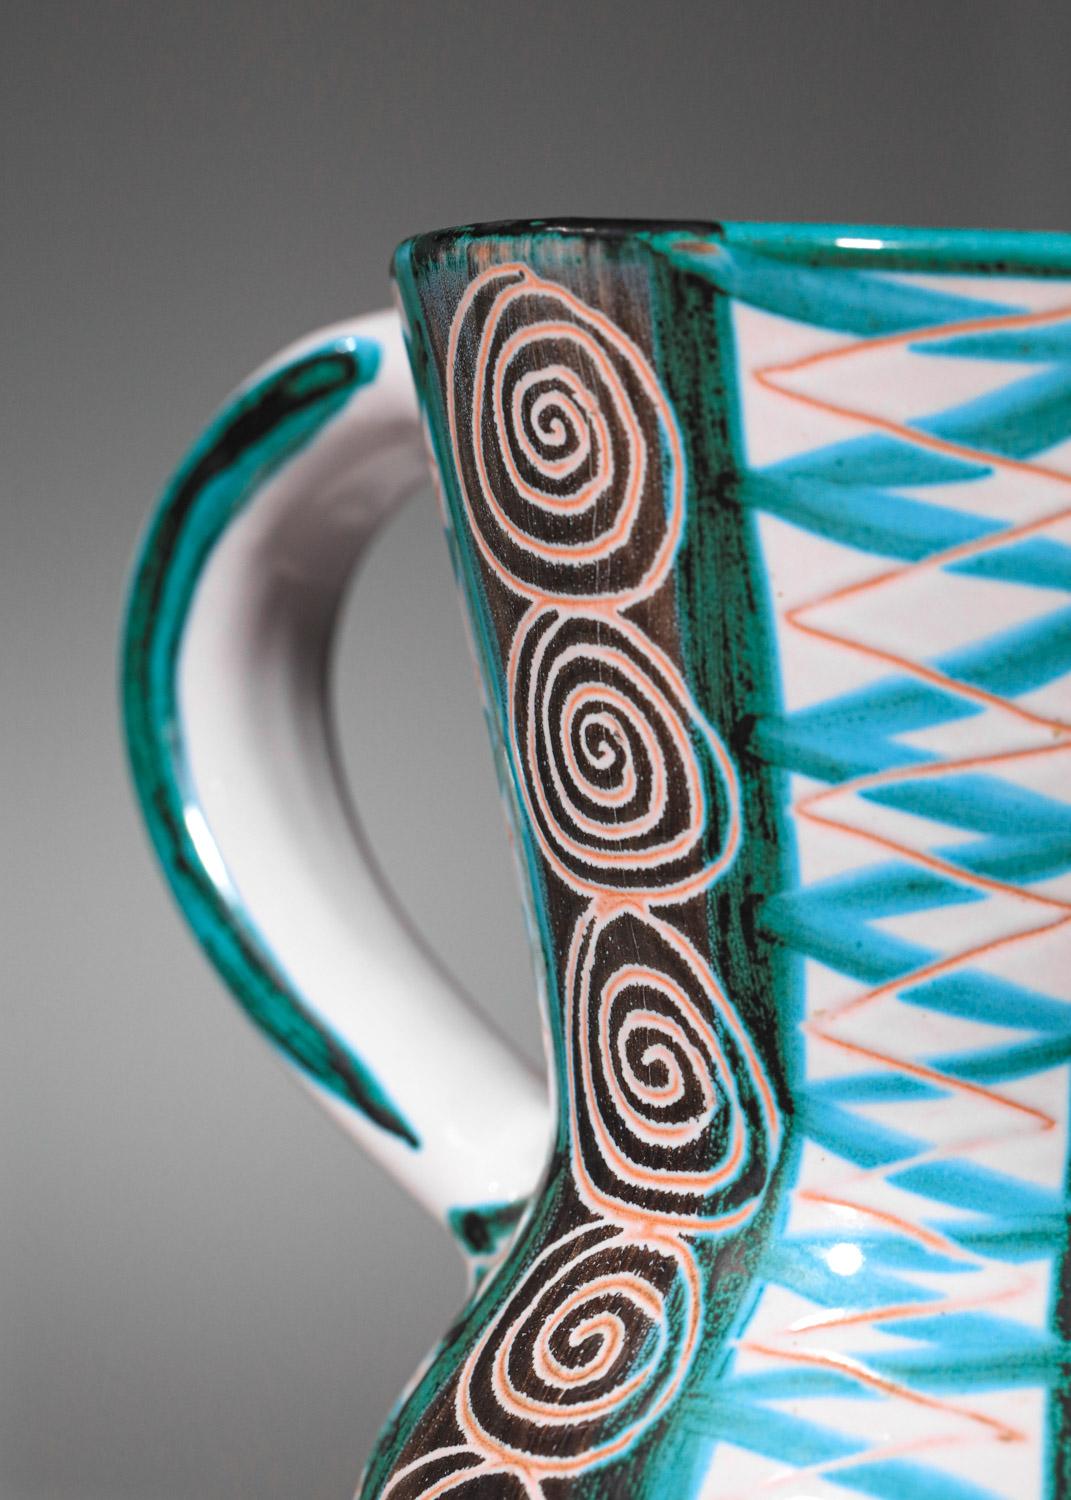 Vase en céramique des années 1960 de l'artiste français Robert Picault, originaire de Vallauris. La céramique est émaillée dans des tons de bleu, de vert et de blanc, avec des décorations géométriques sur l'ensemble, typiques du céramiste. Très bel